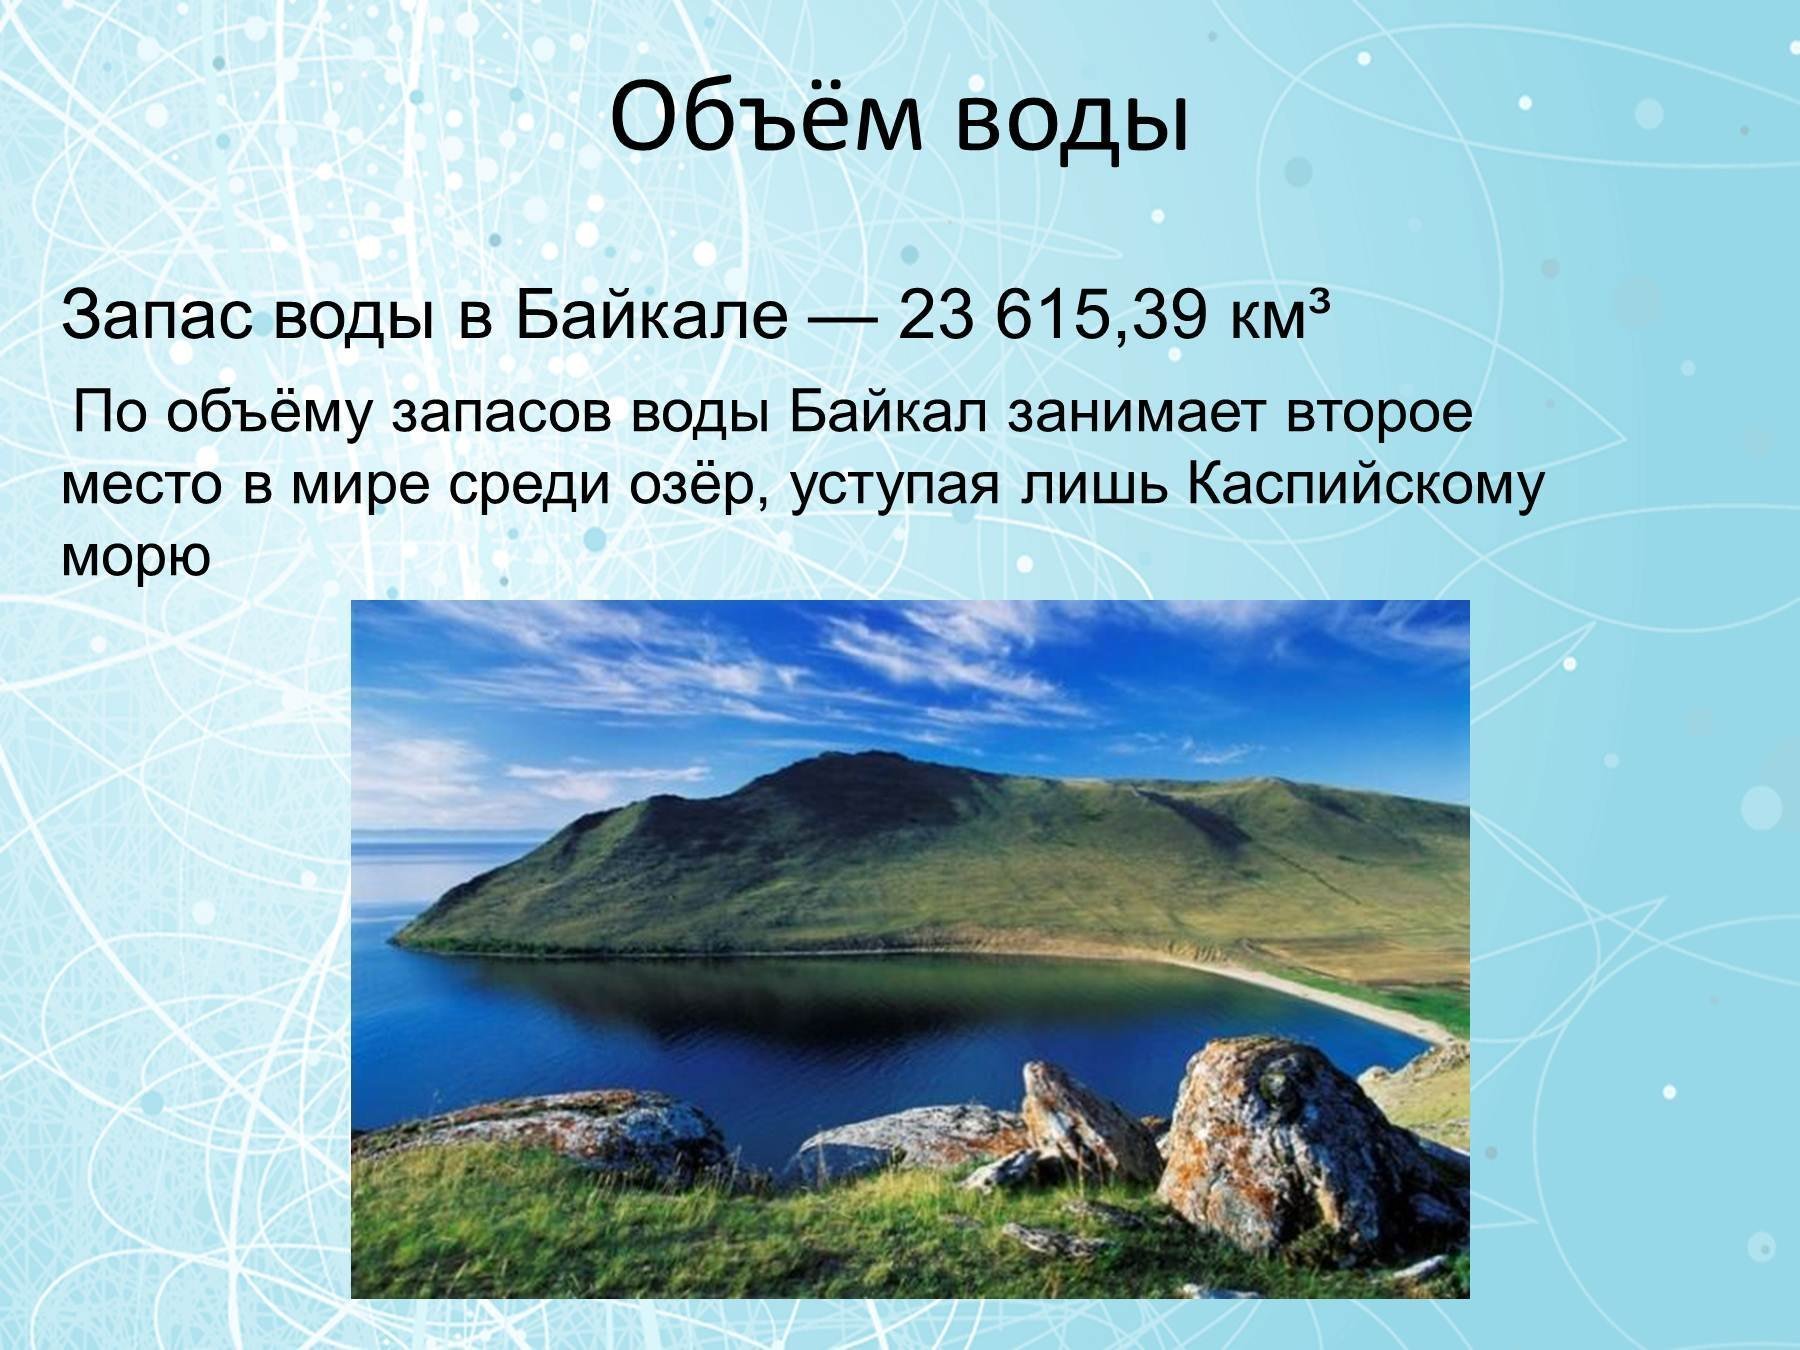 Объем озера байкал в кубических километрах. Объем воды в Байкале. Озеро Байкал объем воды. Запасы воды в Байкале. Объем озера Байкал.